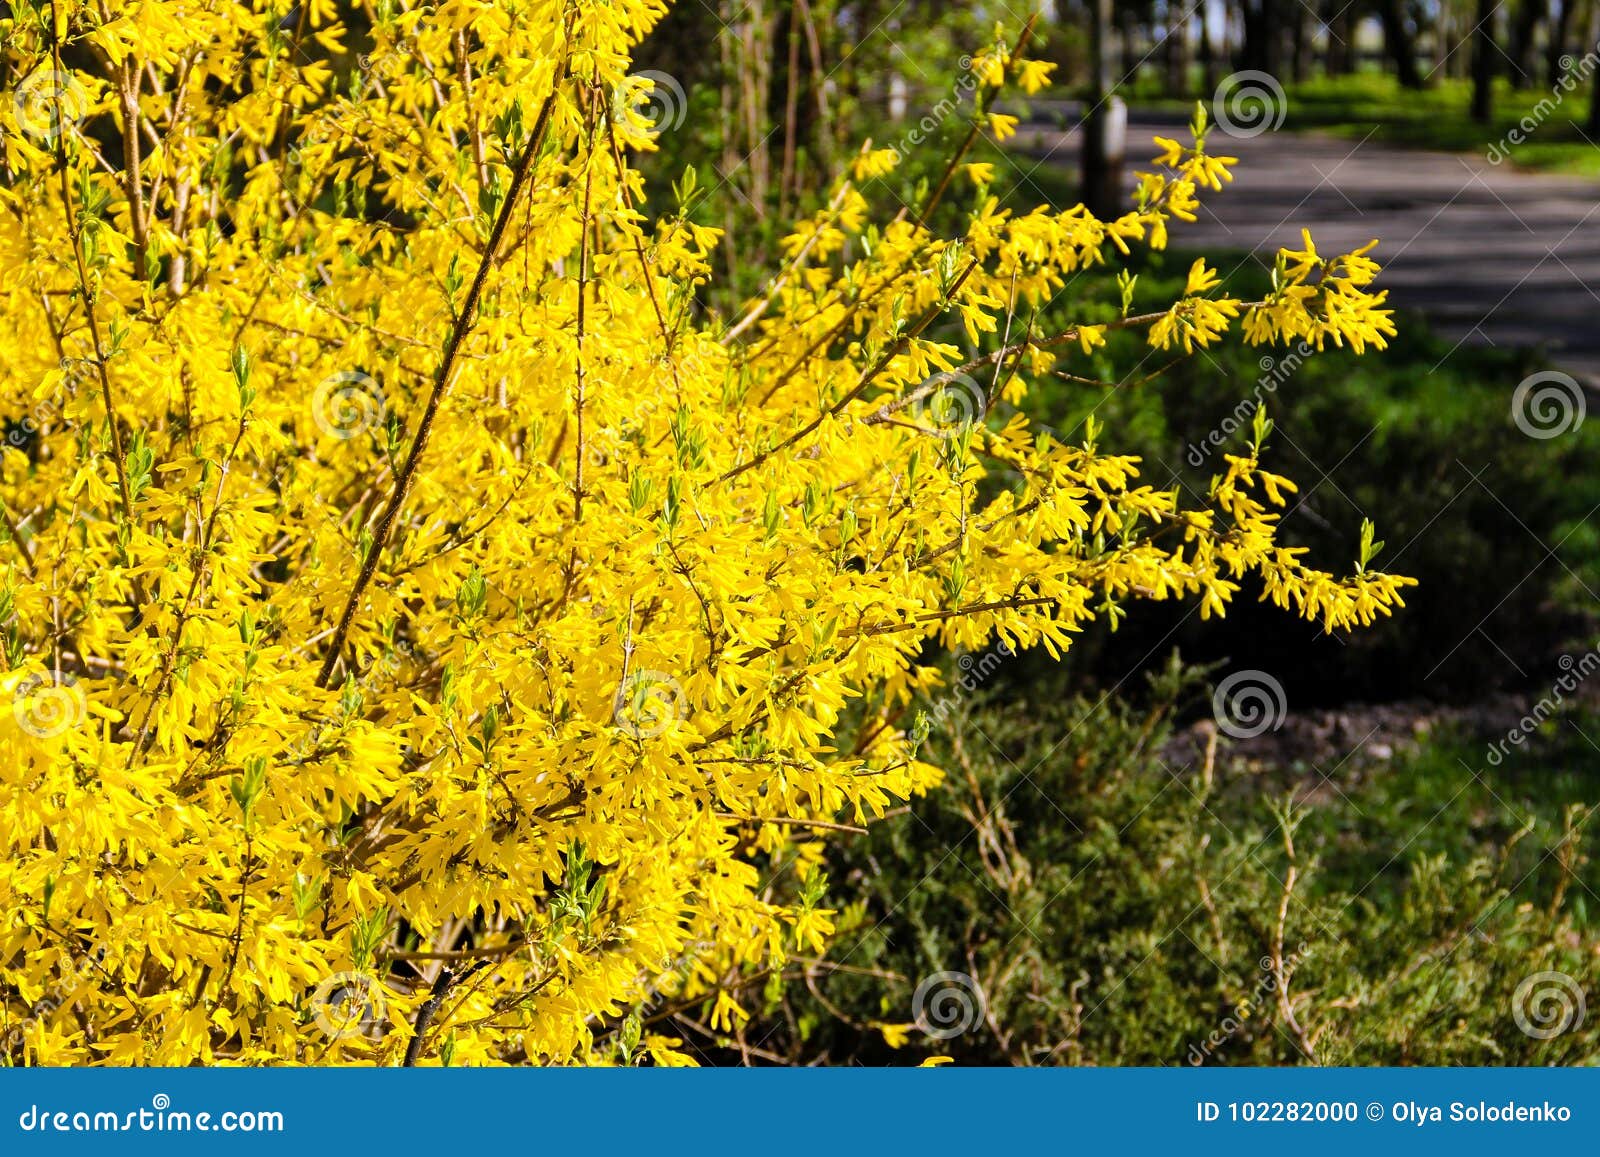 Куст желтыми цветами без листьев. Желтый куст форзиция. Буш кустарник желтый. Кустарник с жёлтыми цветами ранней весной без листьев. Куст с желтыми цветами весной без листьев.